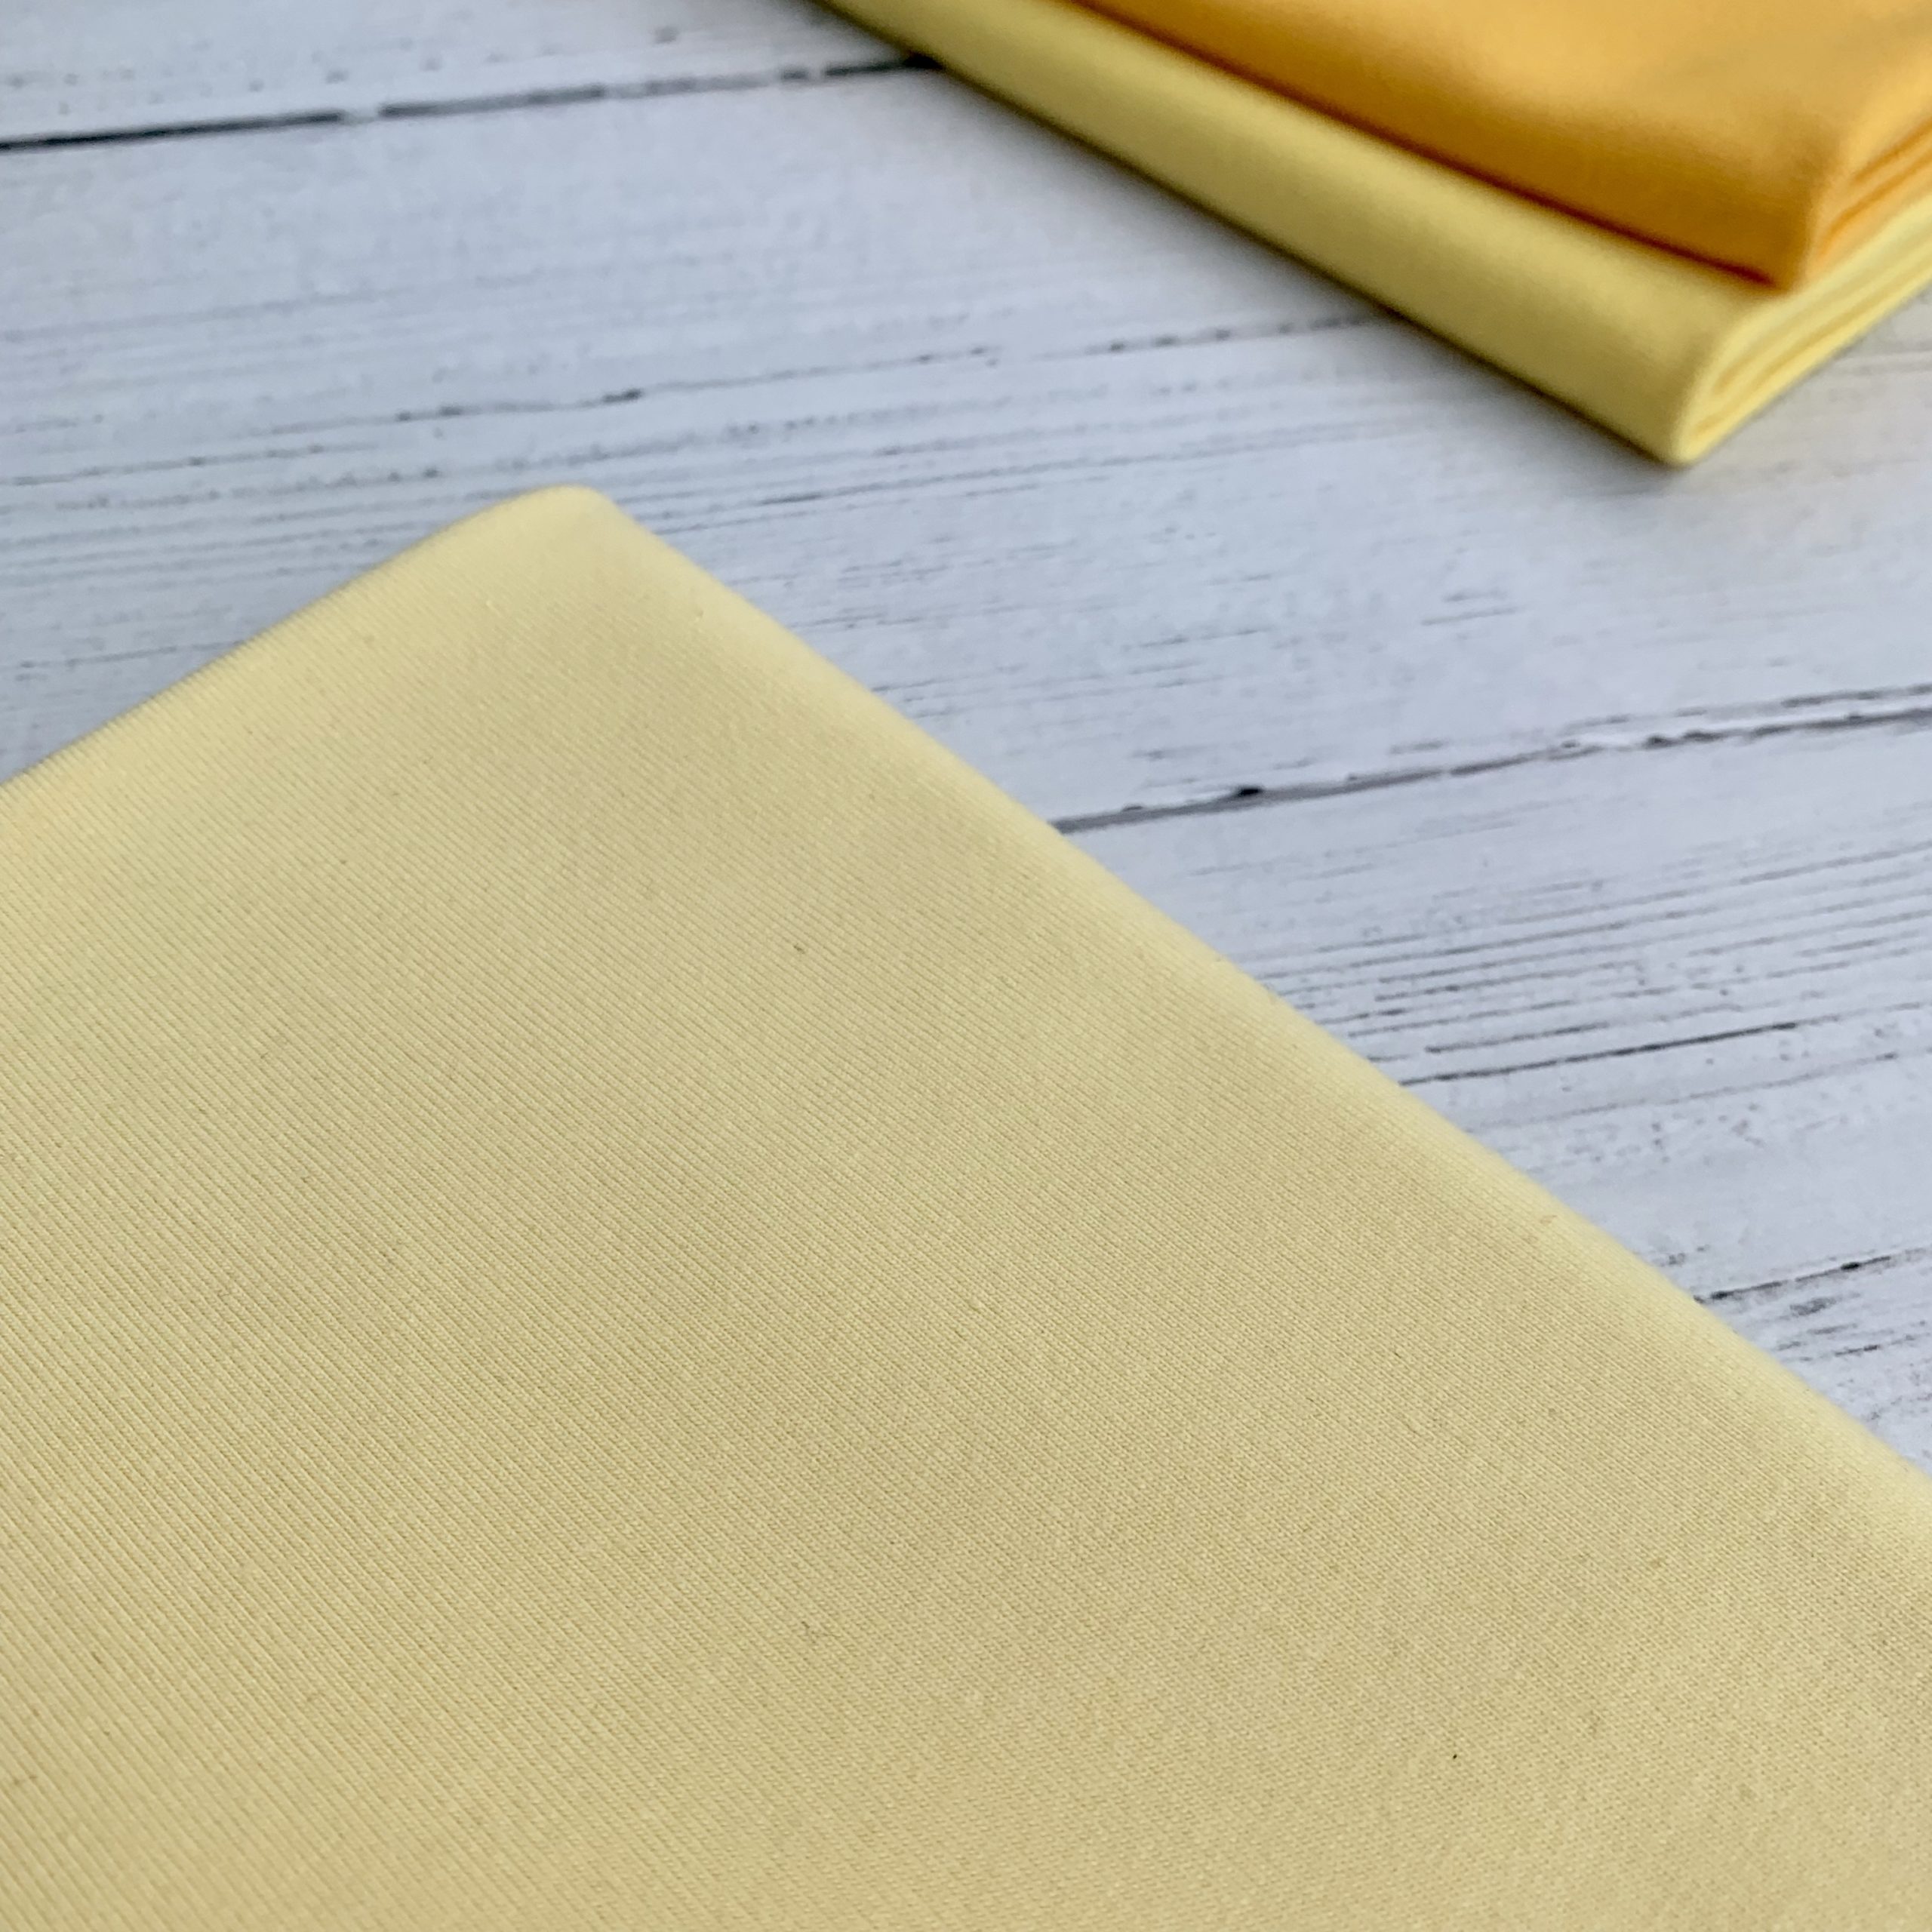 yellow jersey knit fabric